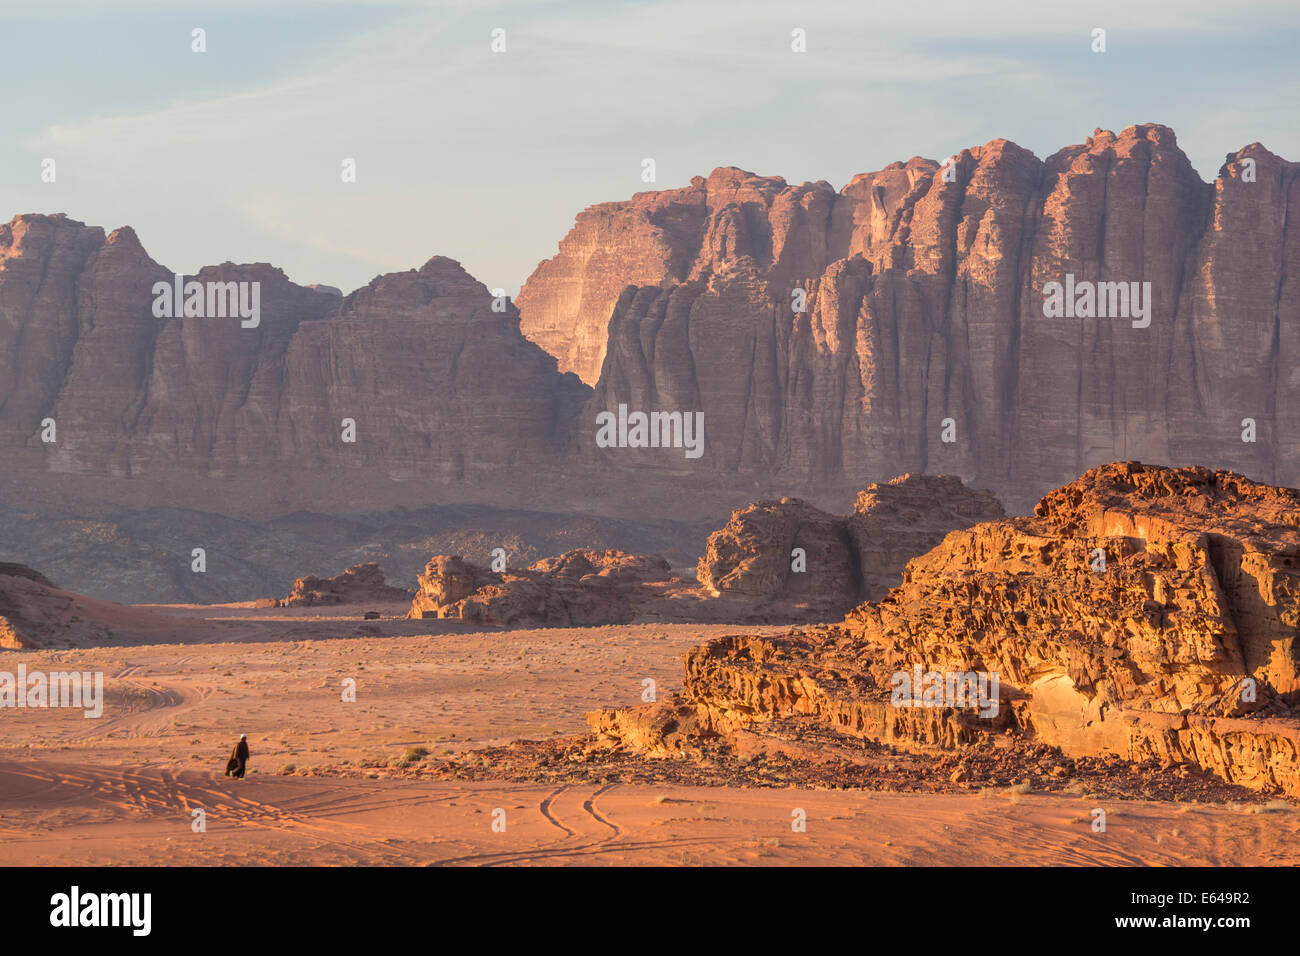 L'homme marchant sur les bédouins du désert, Wadi Rum, Jordanie Banque D'Images